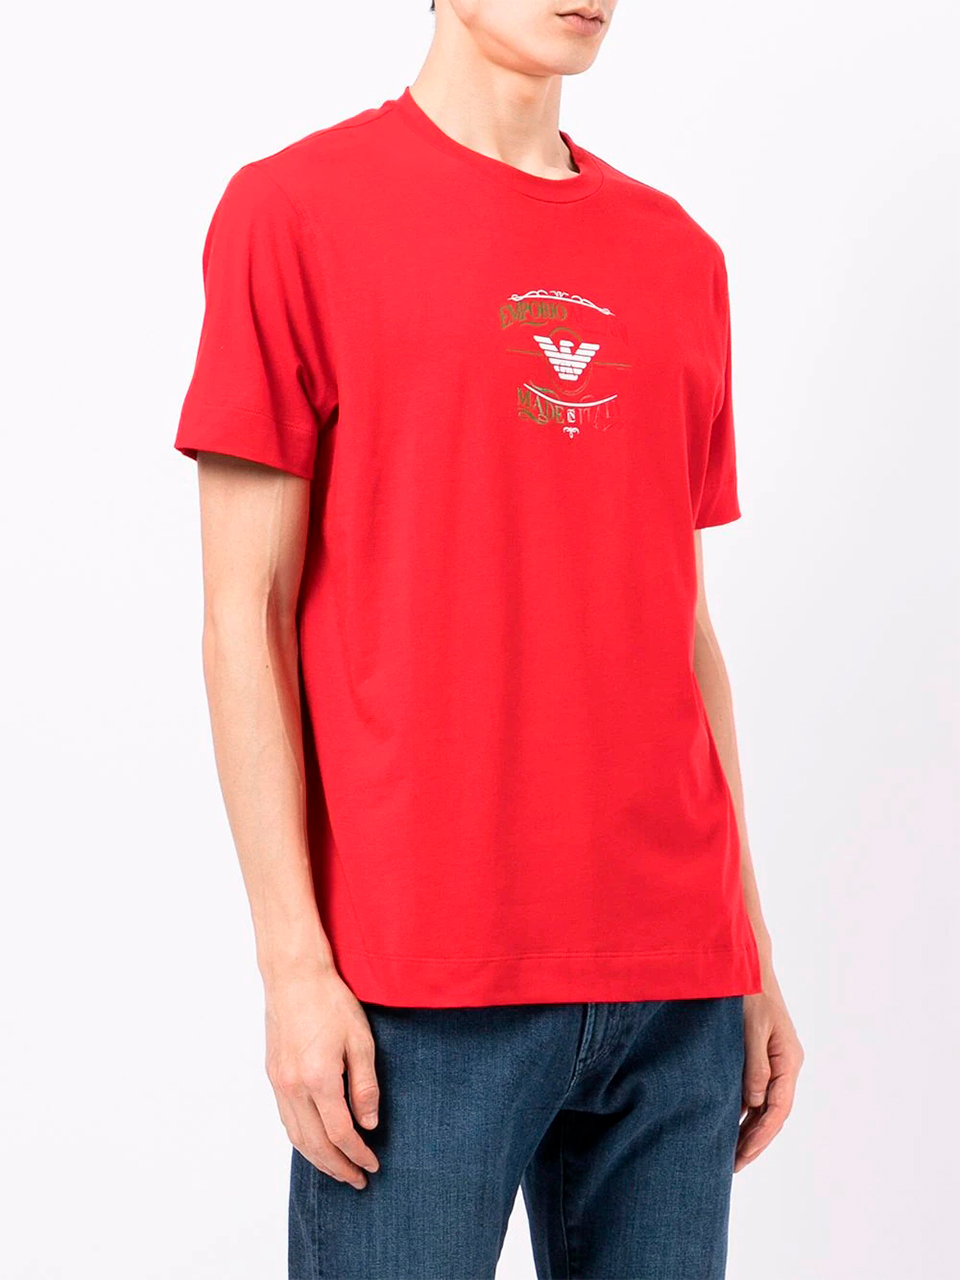 Imagem de: Camiseta Emporio Armani Vermelha com Estampa Bicolor